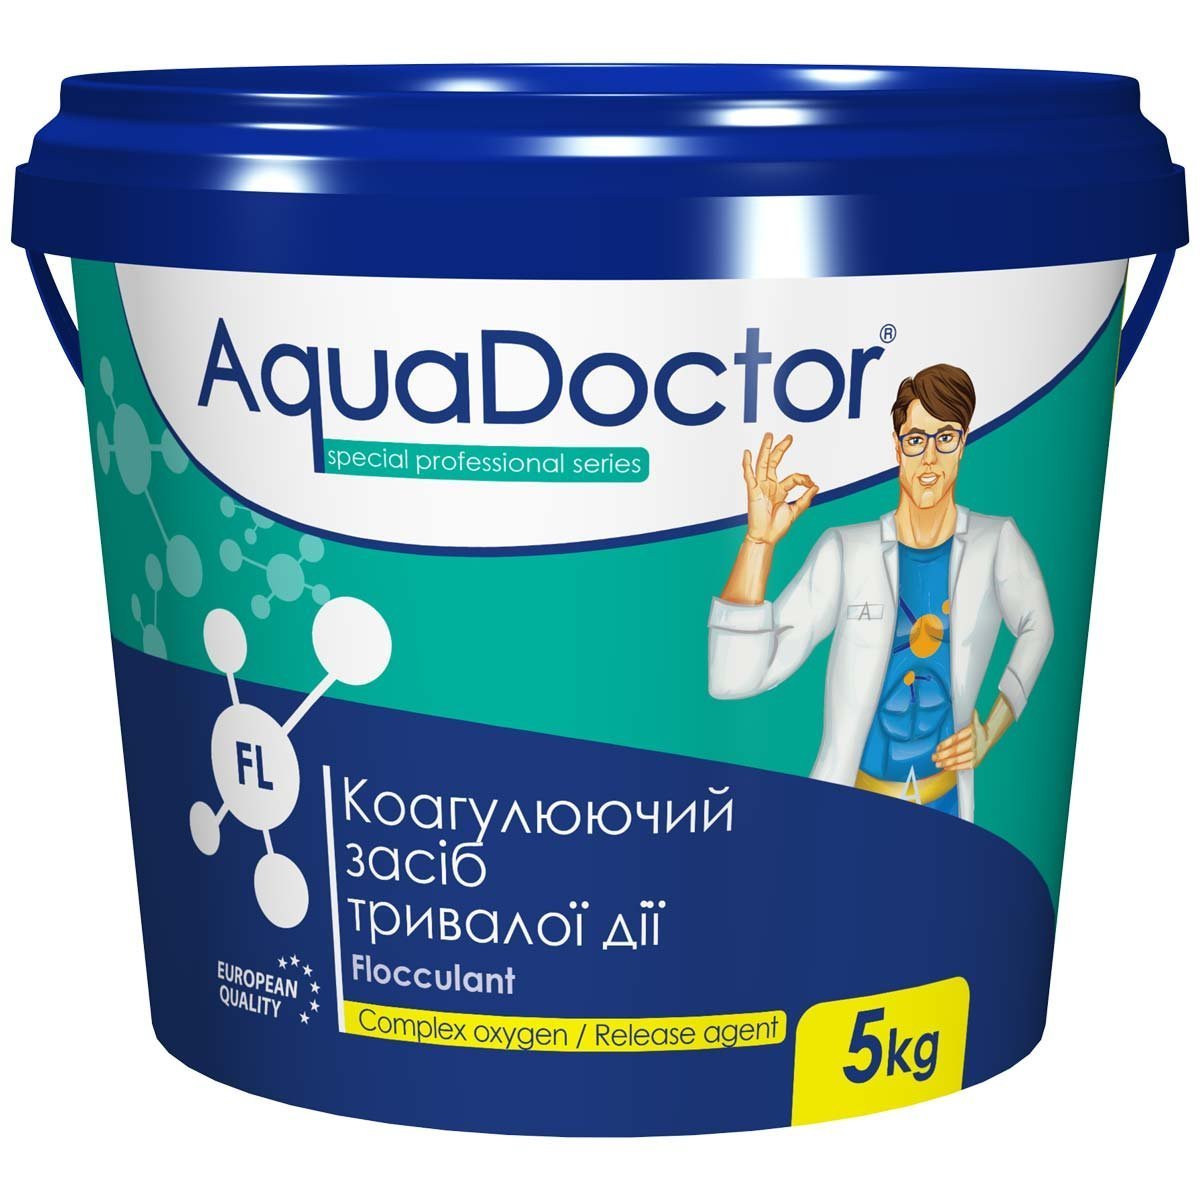 Коагулирующее средство в гранулах AquaDoctor FL – 5 кг